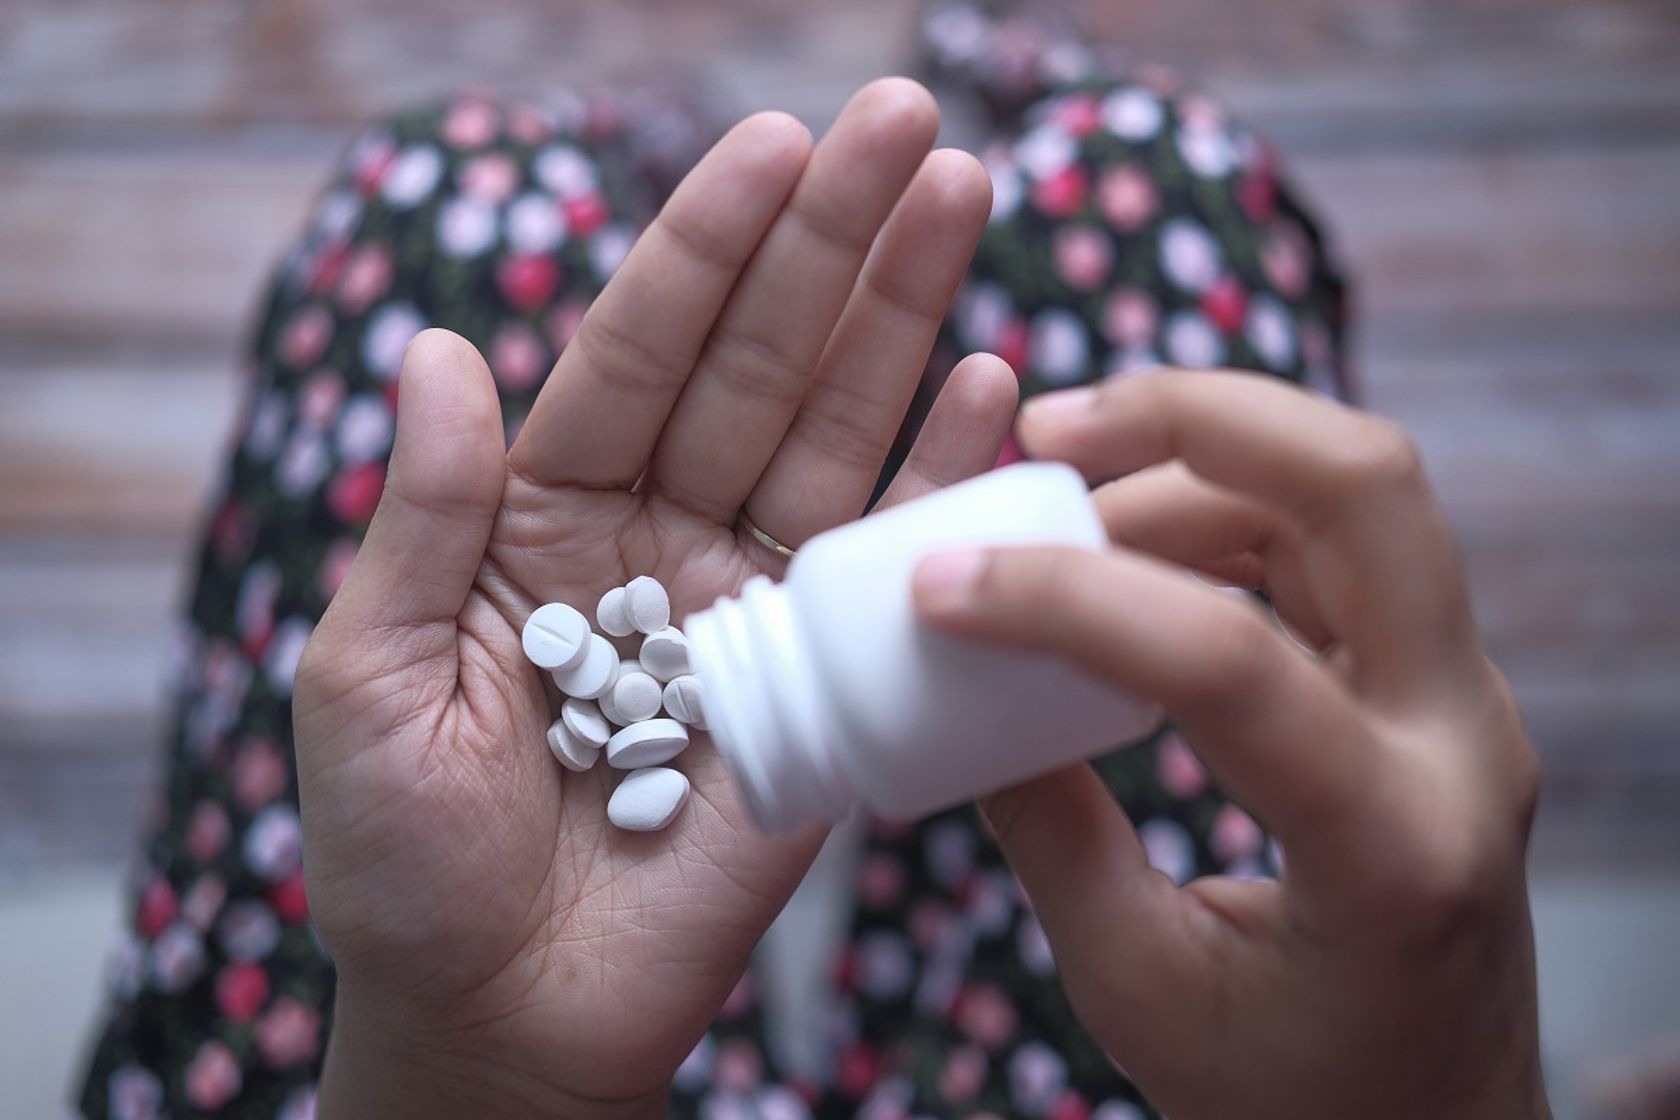 Mensch schüttet sich Tabletten aus einer Packung auf die Hand